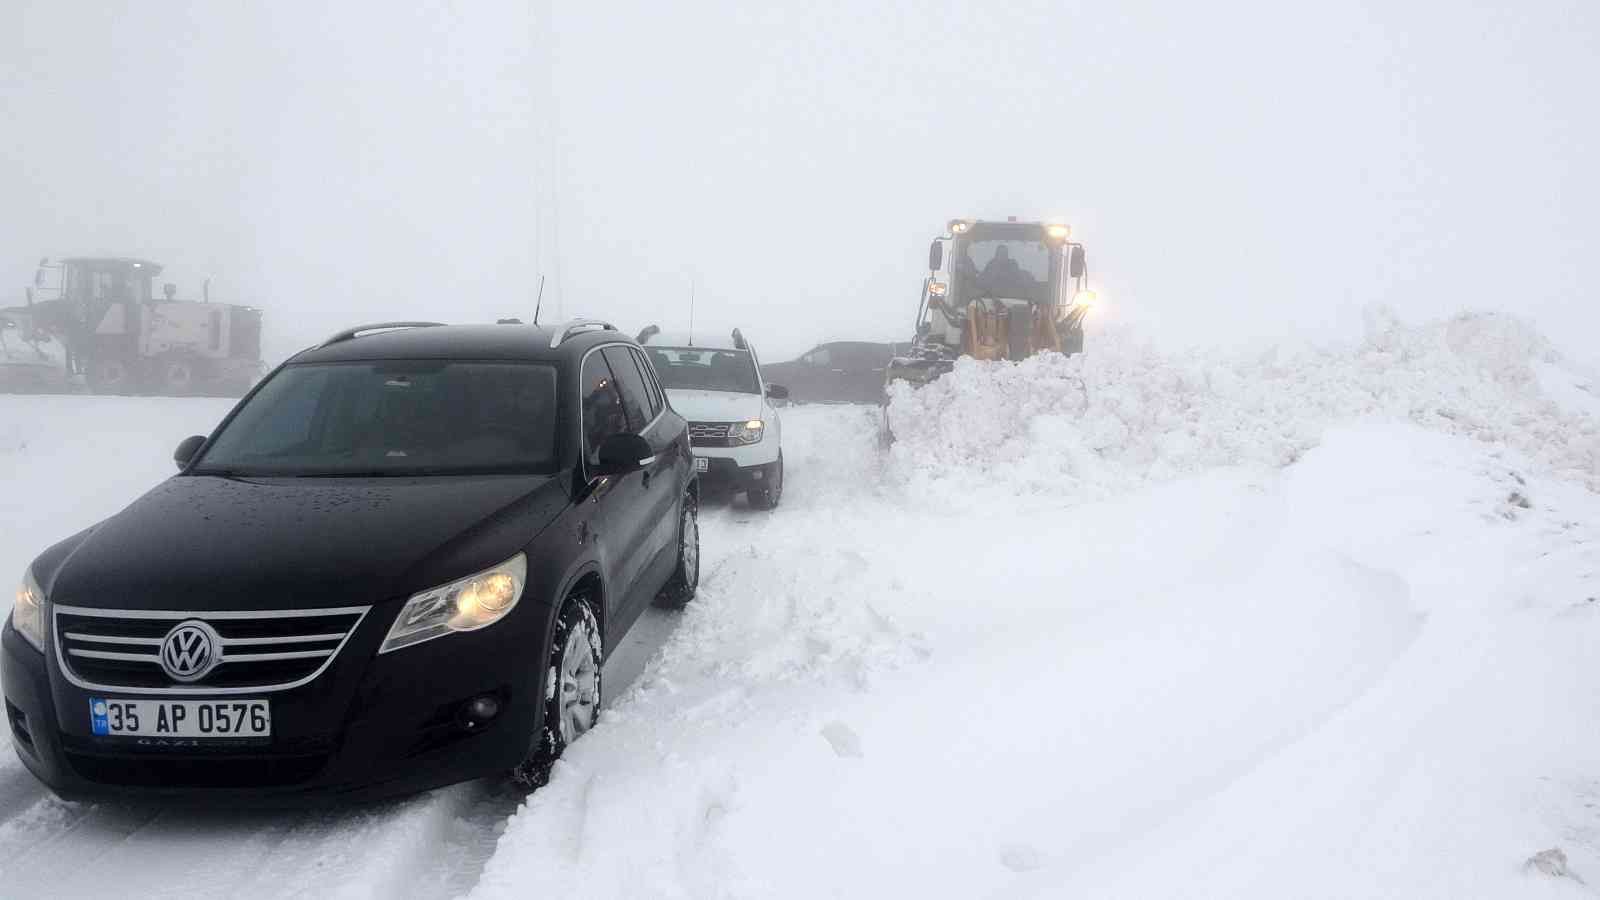 Muş’ta kar ve tipide mahsur kalan 4 araçtaki 20 kişi kurtarıldı #mus